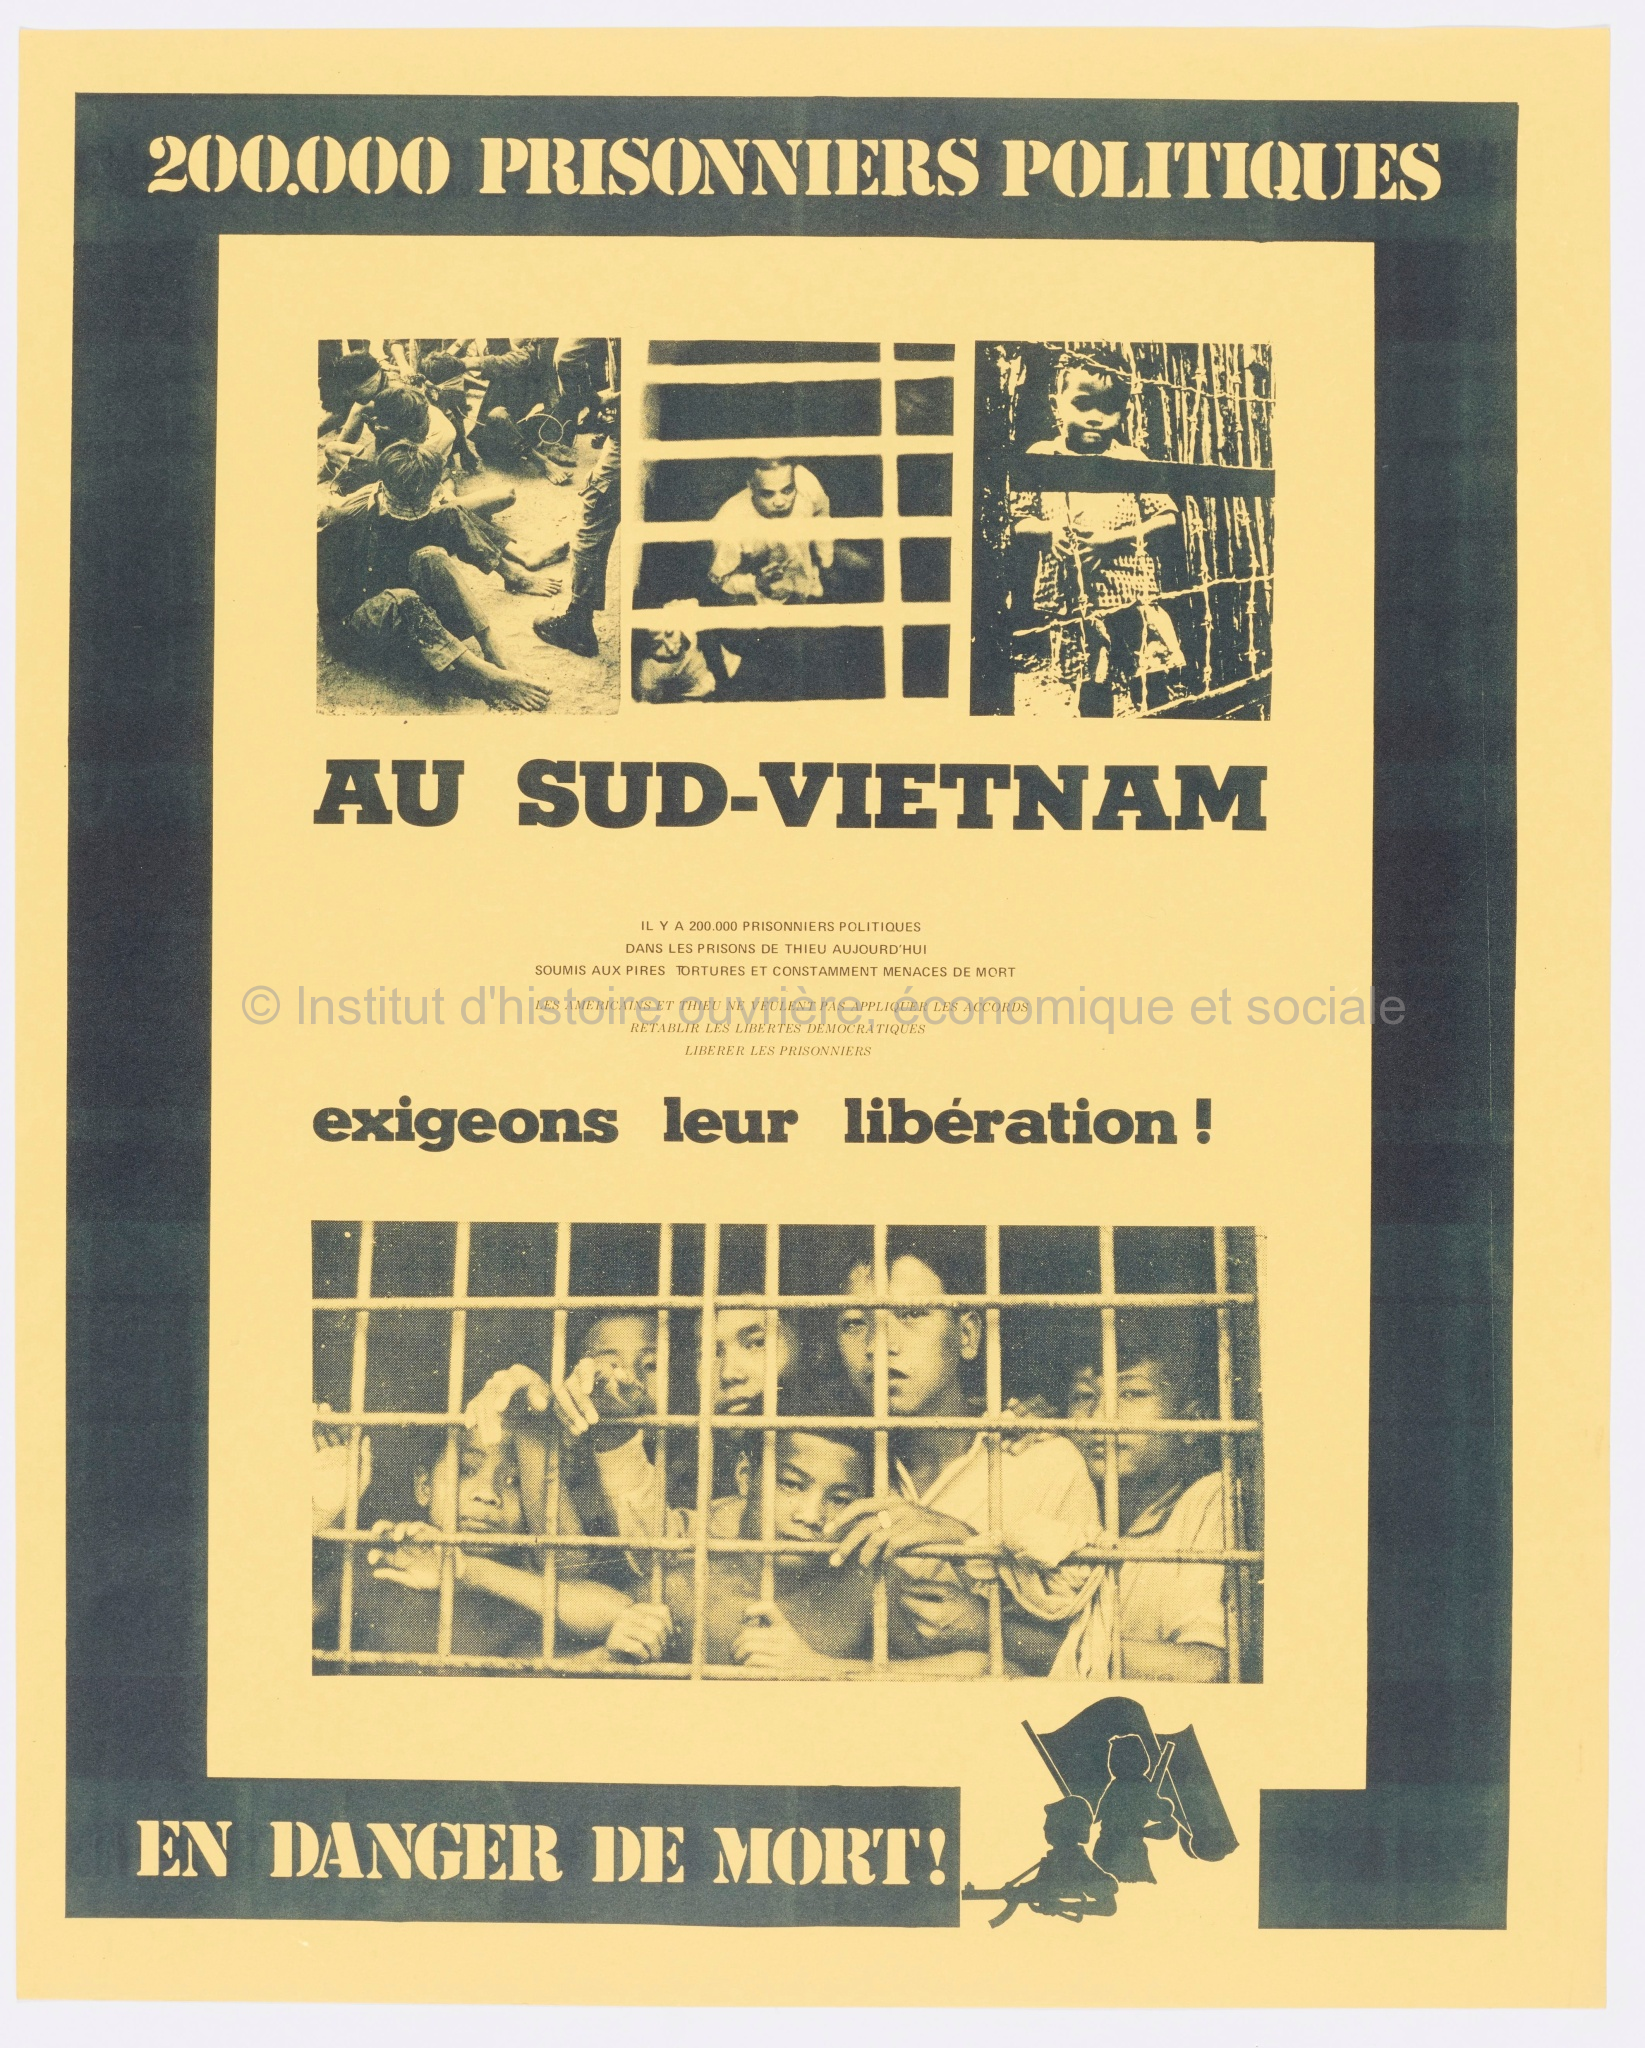 200.000 prisonniers politiques au Sud-Vietnam en danger de mort. Exigeons leur libération !